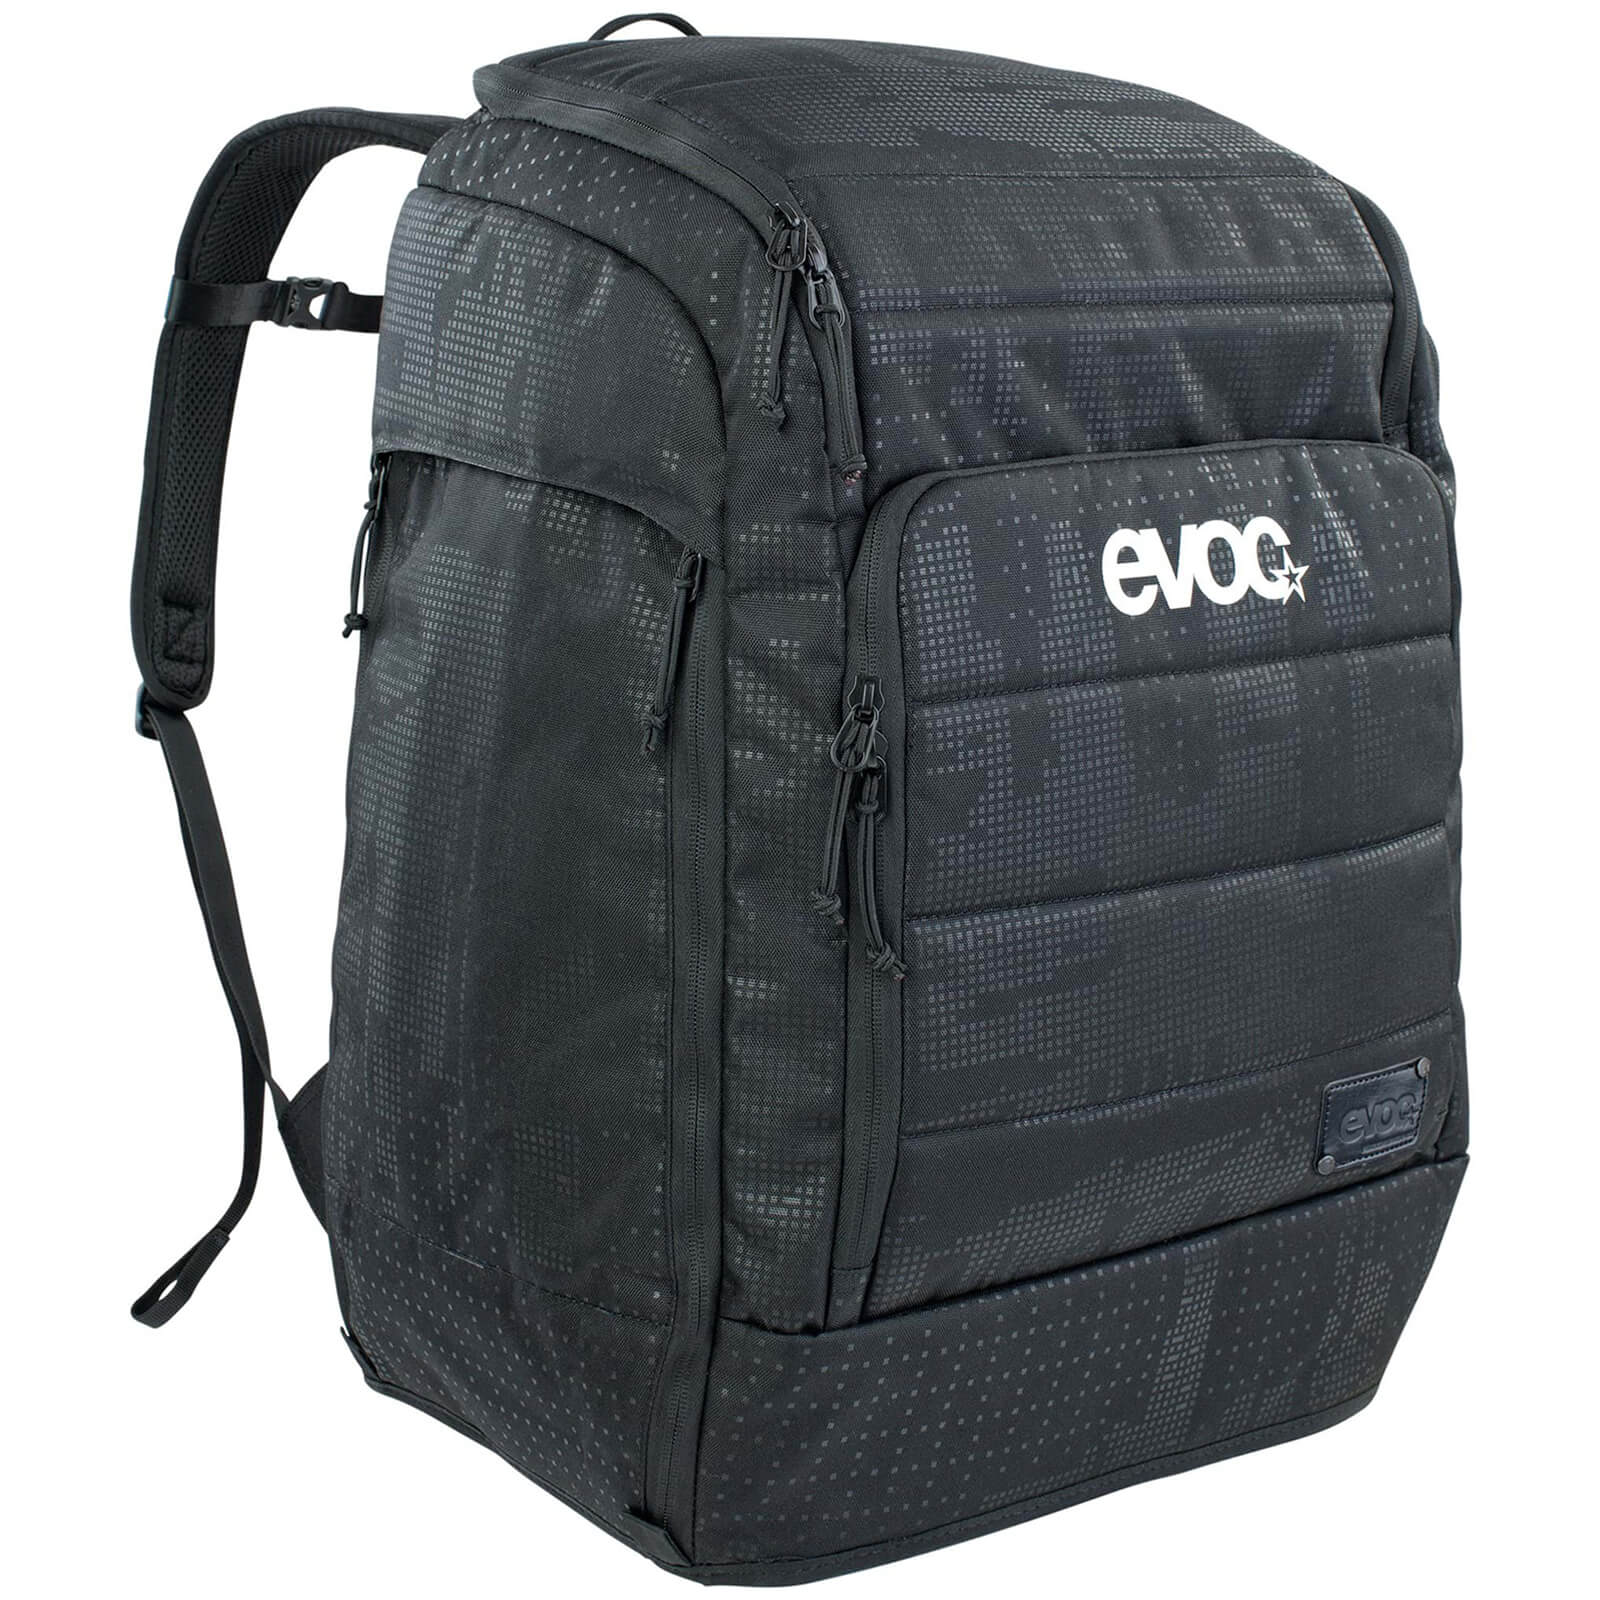 Evoc Gear 60L Backpack - Schwarz